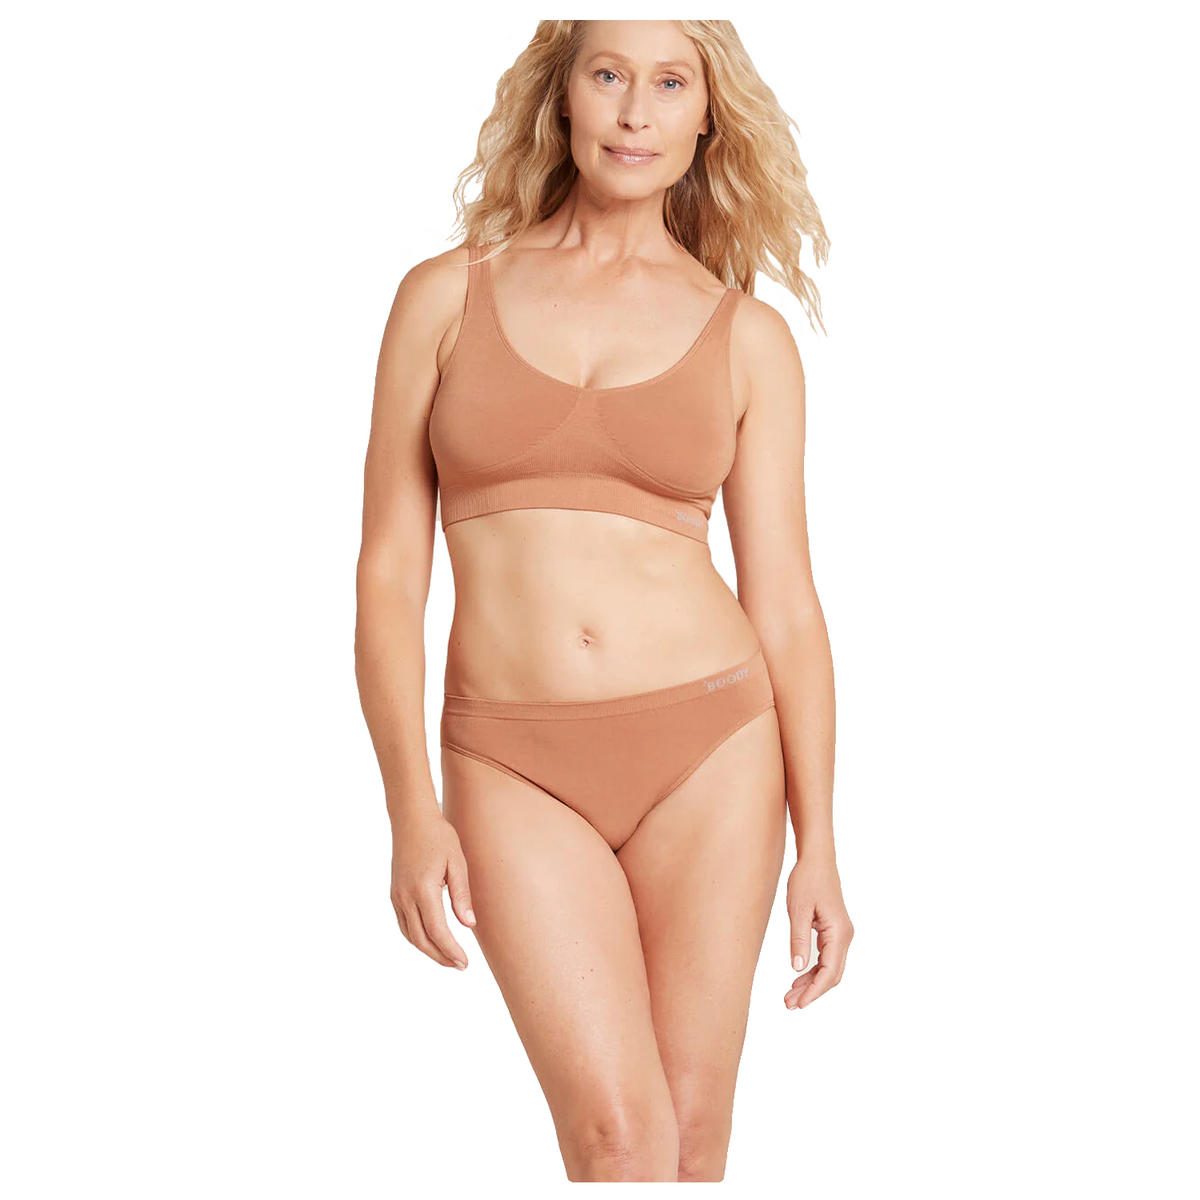 Boody Ecowear for Adult Women's Classic Bikini - Nude 2 - Medium